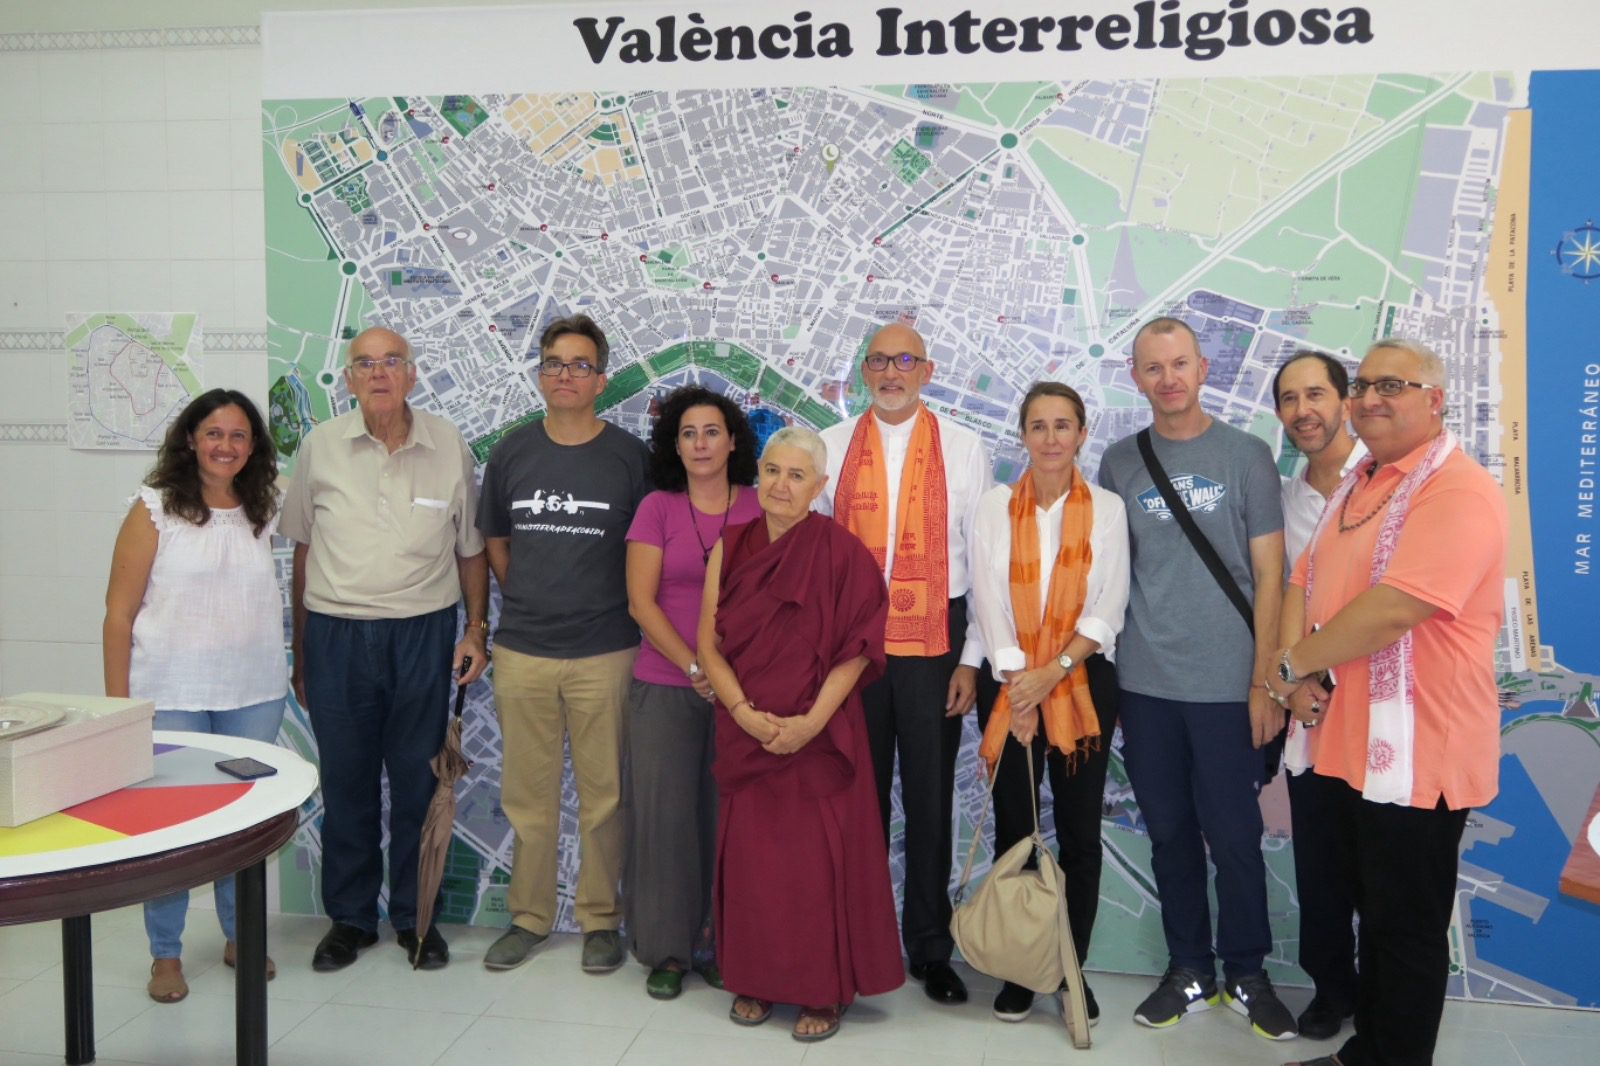 Inauguración del Espacio Valencia Interreligioso del Servicio Jesuita a Migrantes